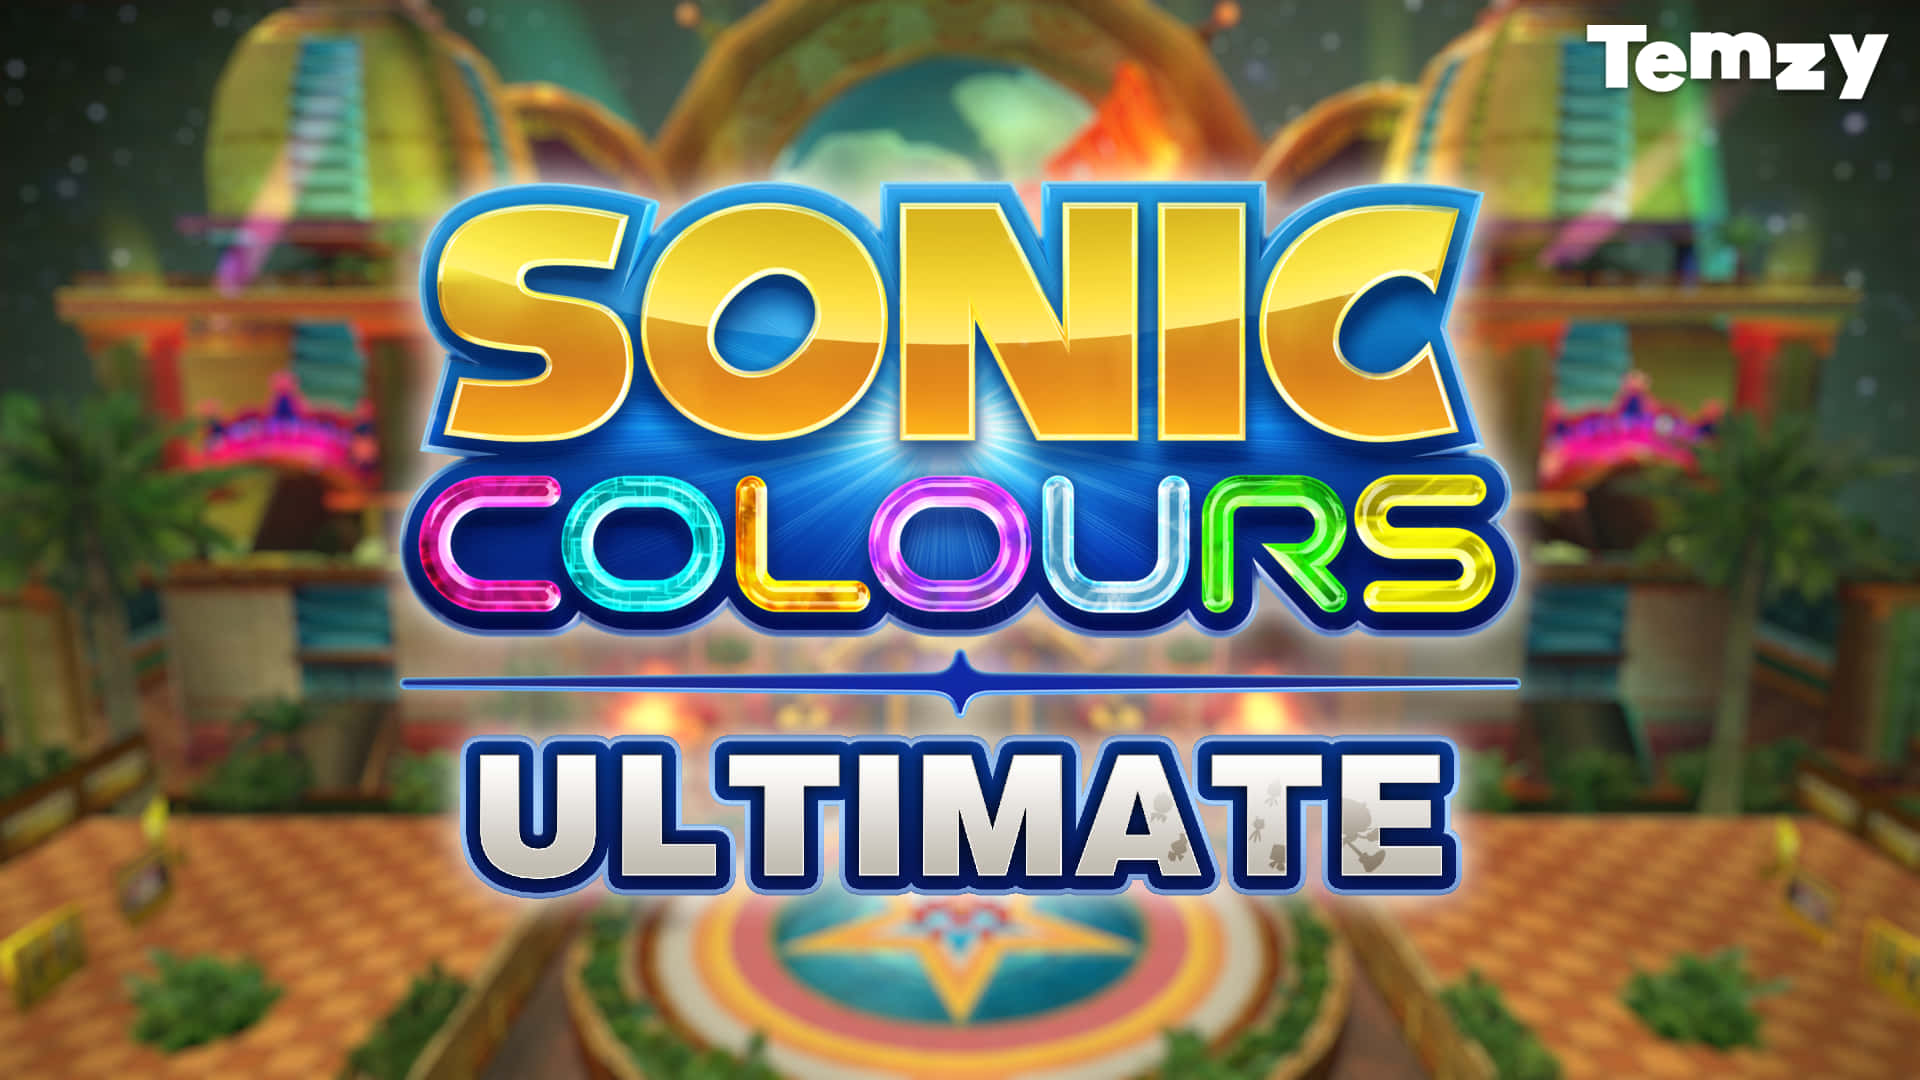 Fåen Forbedret Oplevelse Når Du Rejser Gennem Teknologi Inspirerede Eventyrlandskaber Med Sonic Colors Som Din Computer Eller Mobilbaggrund! Wallpaper